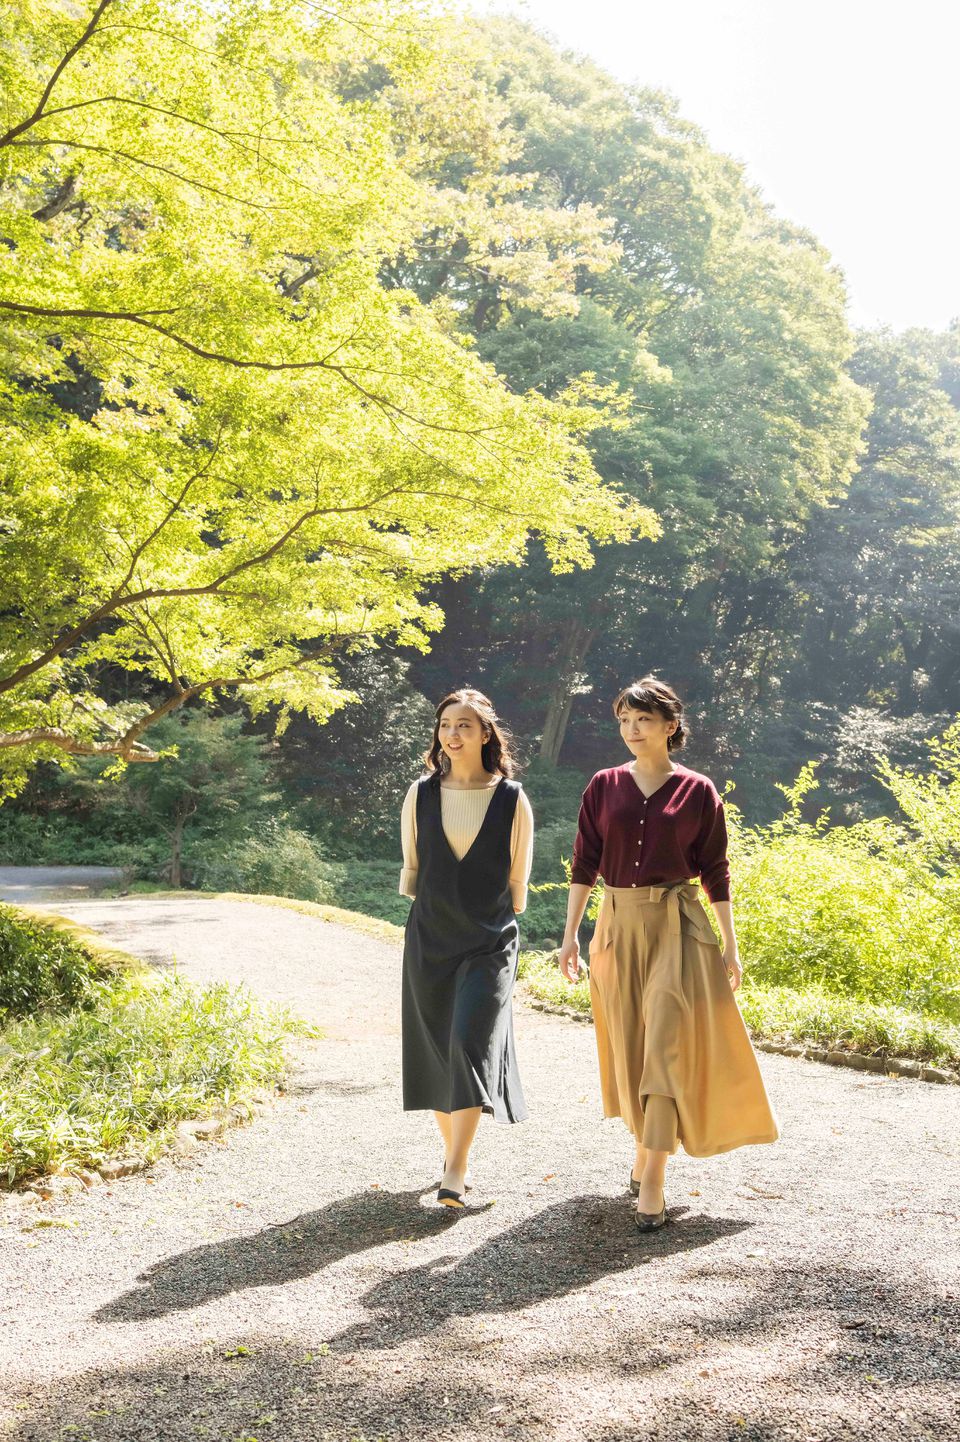 Công chúa Mako (L) của Nhật Bản, con gái của Thái tử Akishino và Công chúa Kiko, trò chuyện với em gái là Công chúa Kako khi họ đi dạo trong khu vườn của dinh thự hoàng gia Akasaka của họ ở Tokyo, Nhật Bản vào ngày 6 tháng 10 năm 2021, trước khi cô ấy 30 tuổi sinh nhật vào ngày 23 tháng 10 năm 2021 và hôn lễ của cô vào ngày 26 tháng 10 năm 2021, trong bức ảnh phát tay này do Cơ quan Hộ gia đình Hoàng gia Nhật Bản cung cấp. Tín dụng bắt buộc Cơ quan Hộ gia đình Hoàng gia Nhật Bản / Tài liệu phát qua REUTERS